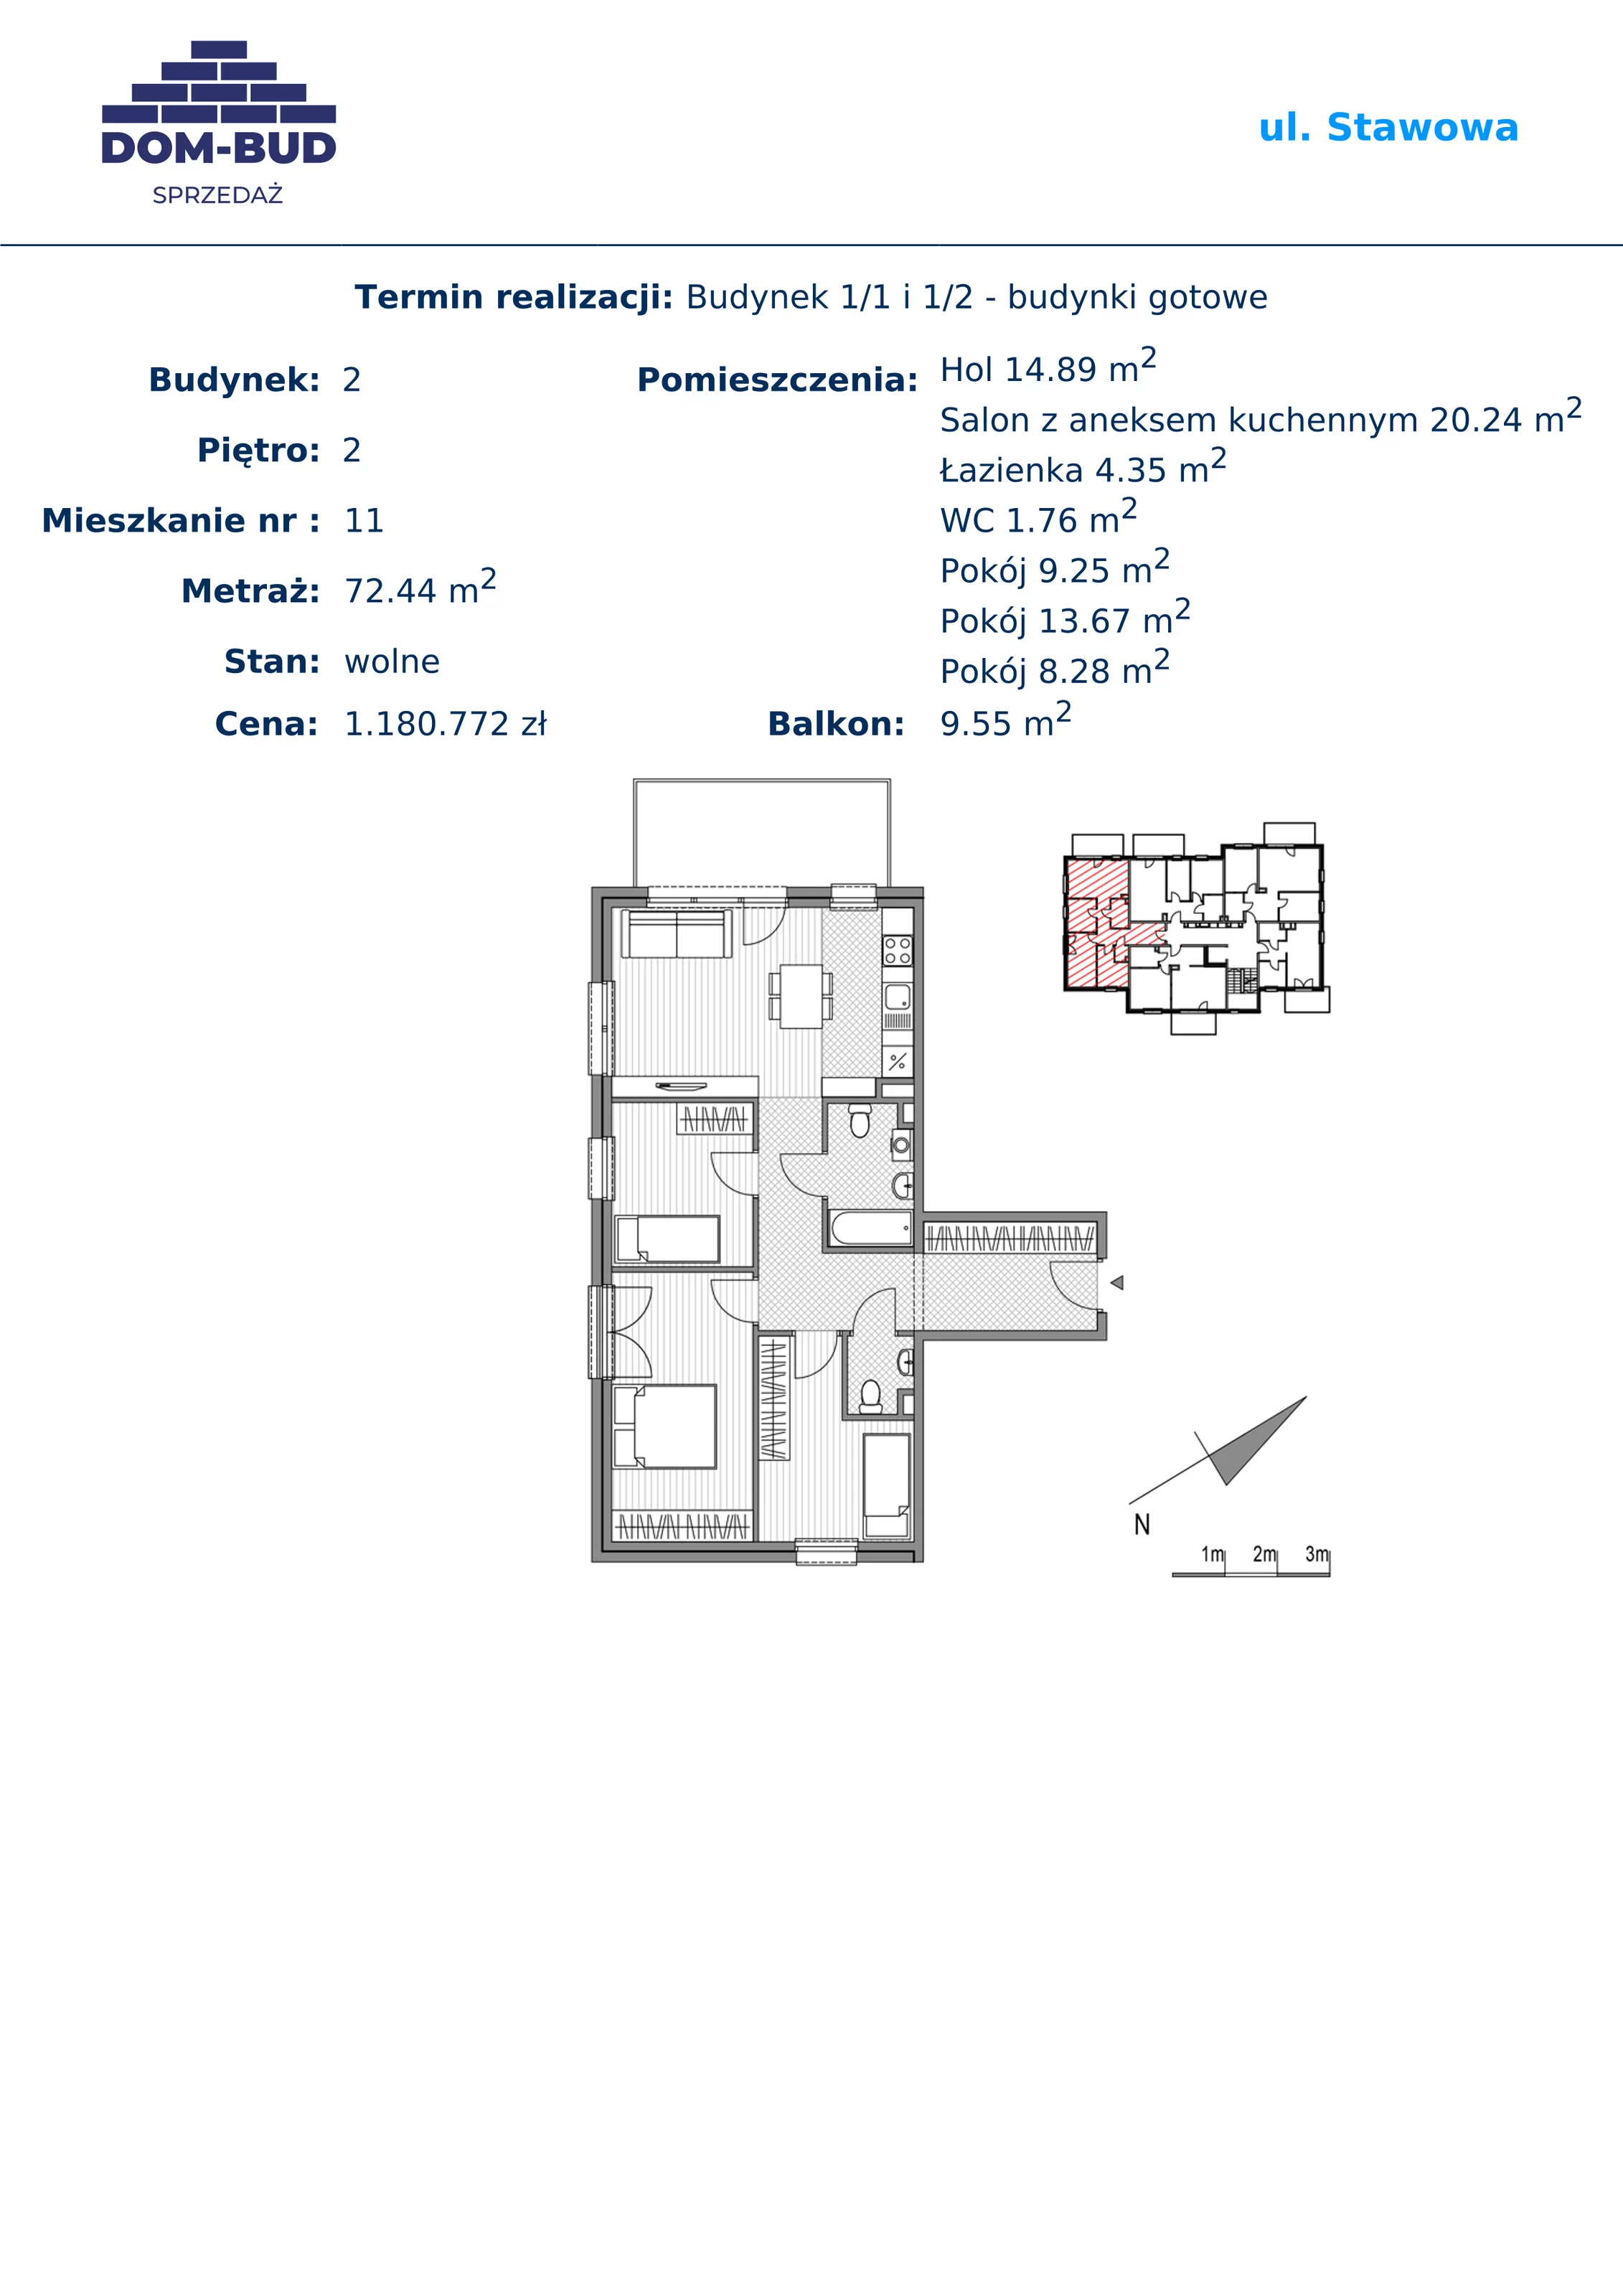 Mieszkanie 72,44 m², piętro 2, oferta nr 1/2-11, ul. Stawowa, Kraków, Prądnik Biały, Bronowice Wielkie, ul. Stawowa 242